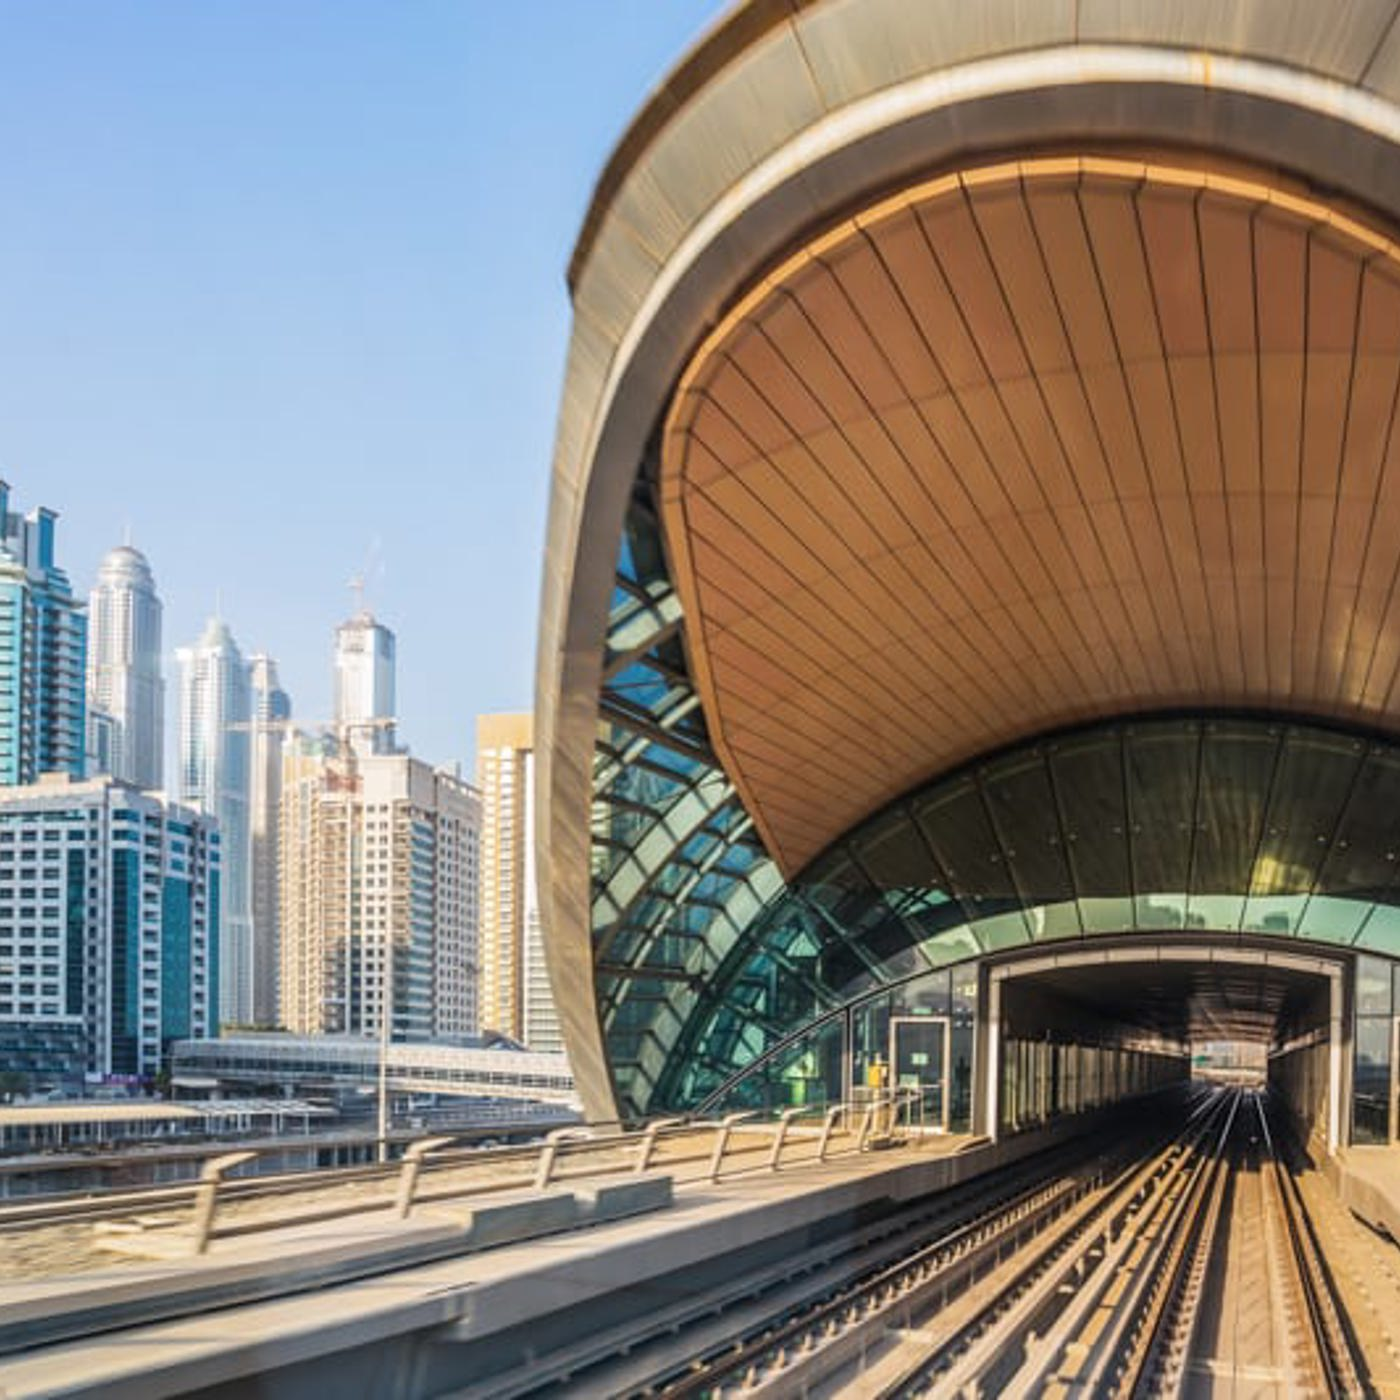 Dubai Metro Station, DUBAI